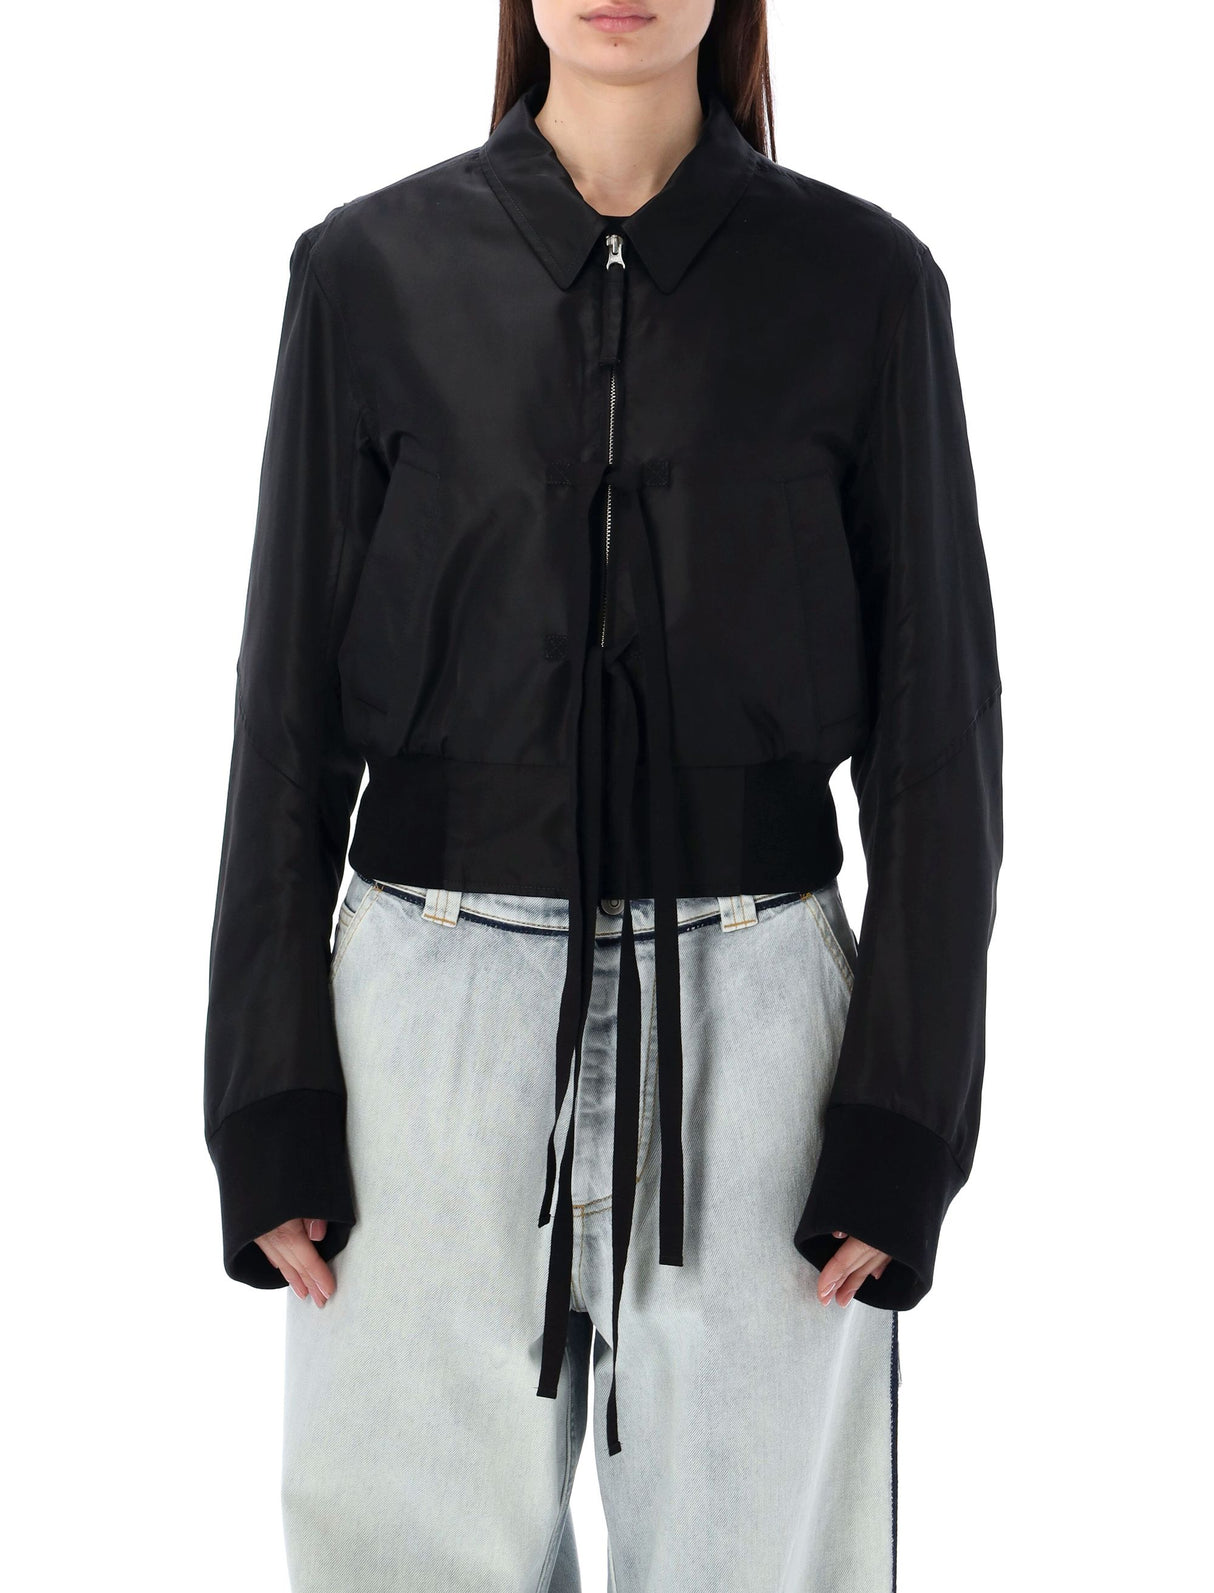 女装尼龙短款西装外套-黑色对比色腰边和袖口设计前拉链蝴蝶结细节